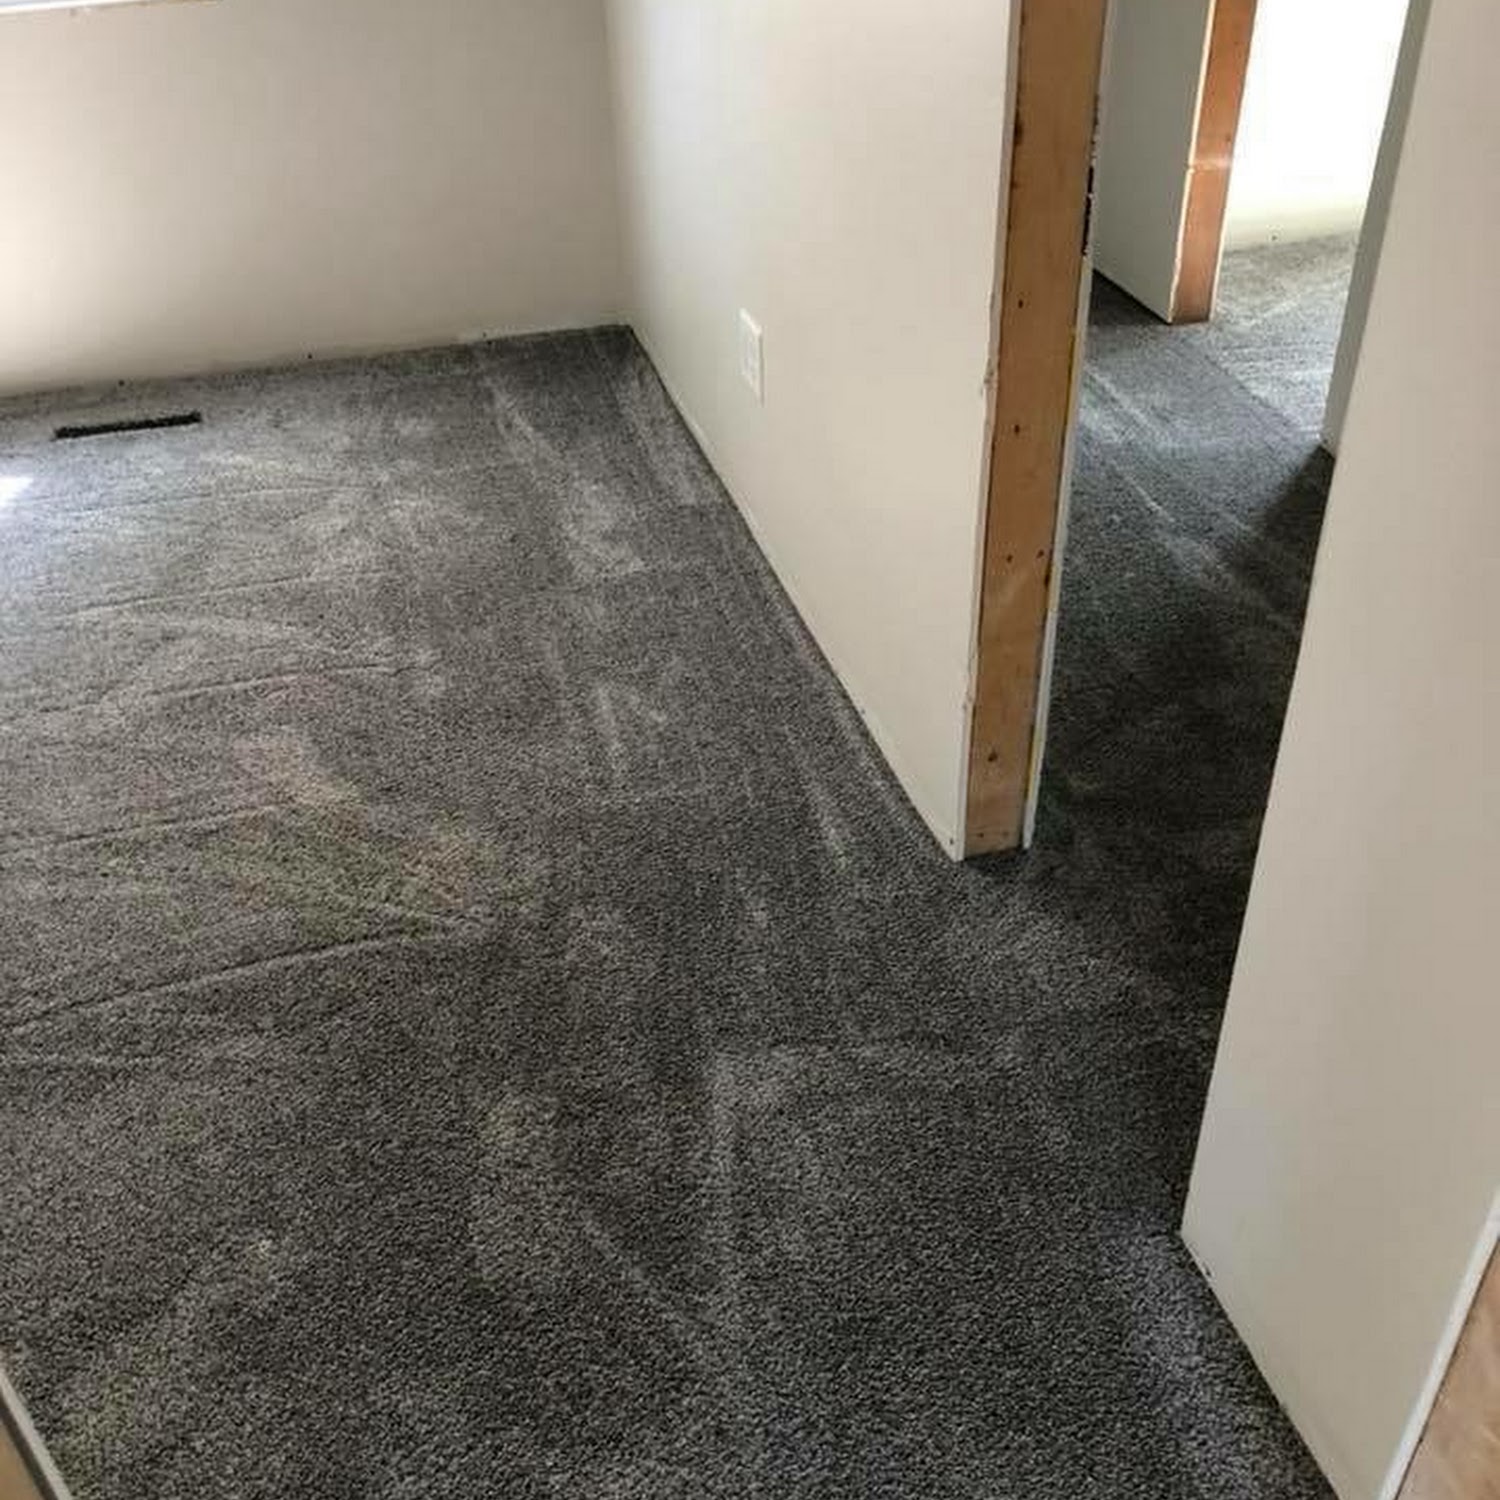 residential broadloom carpet